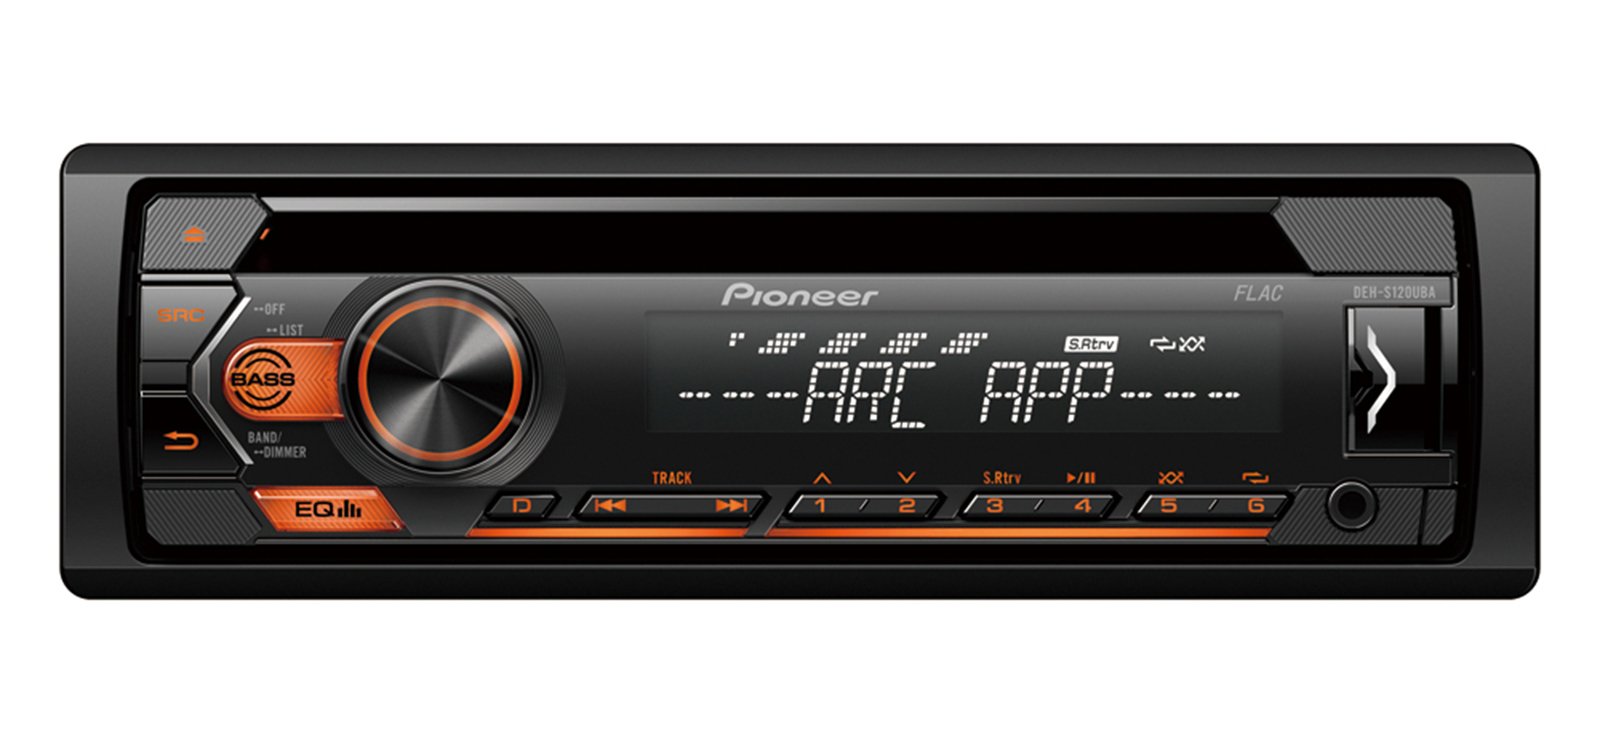 Pioneer DEH-S120UBB Autoradio met CD-speler